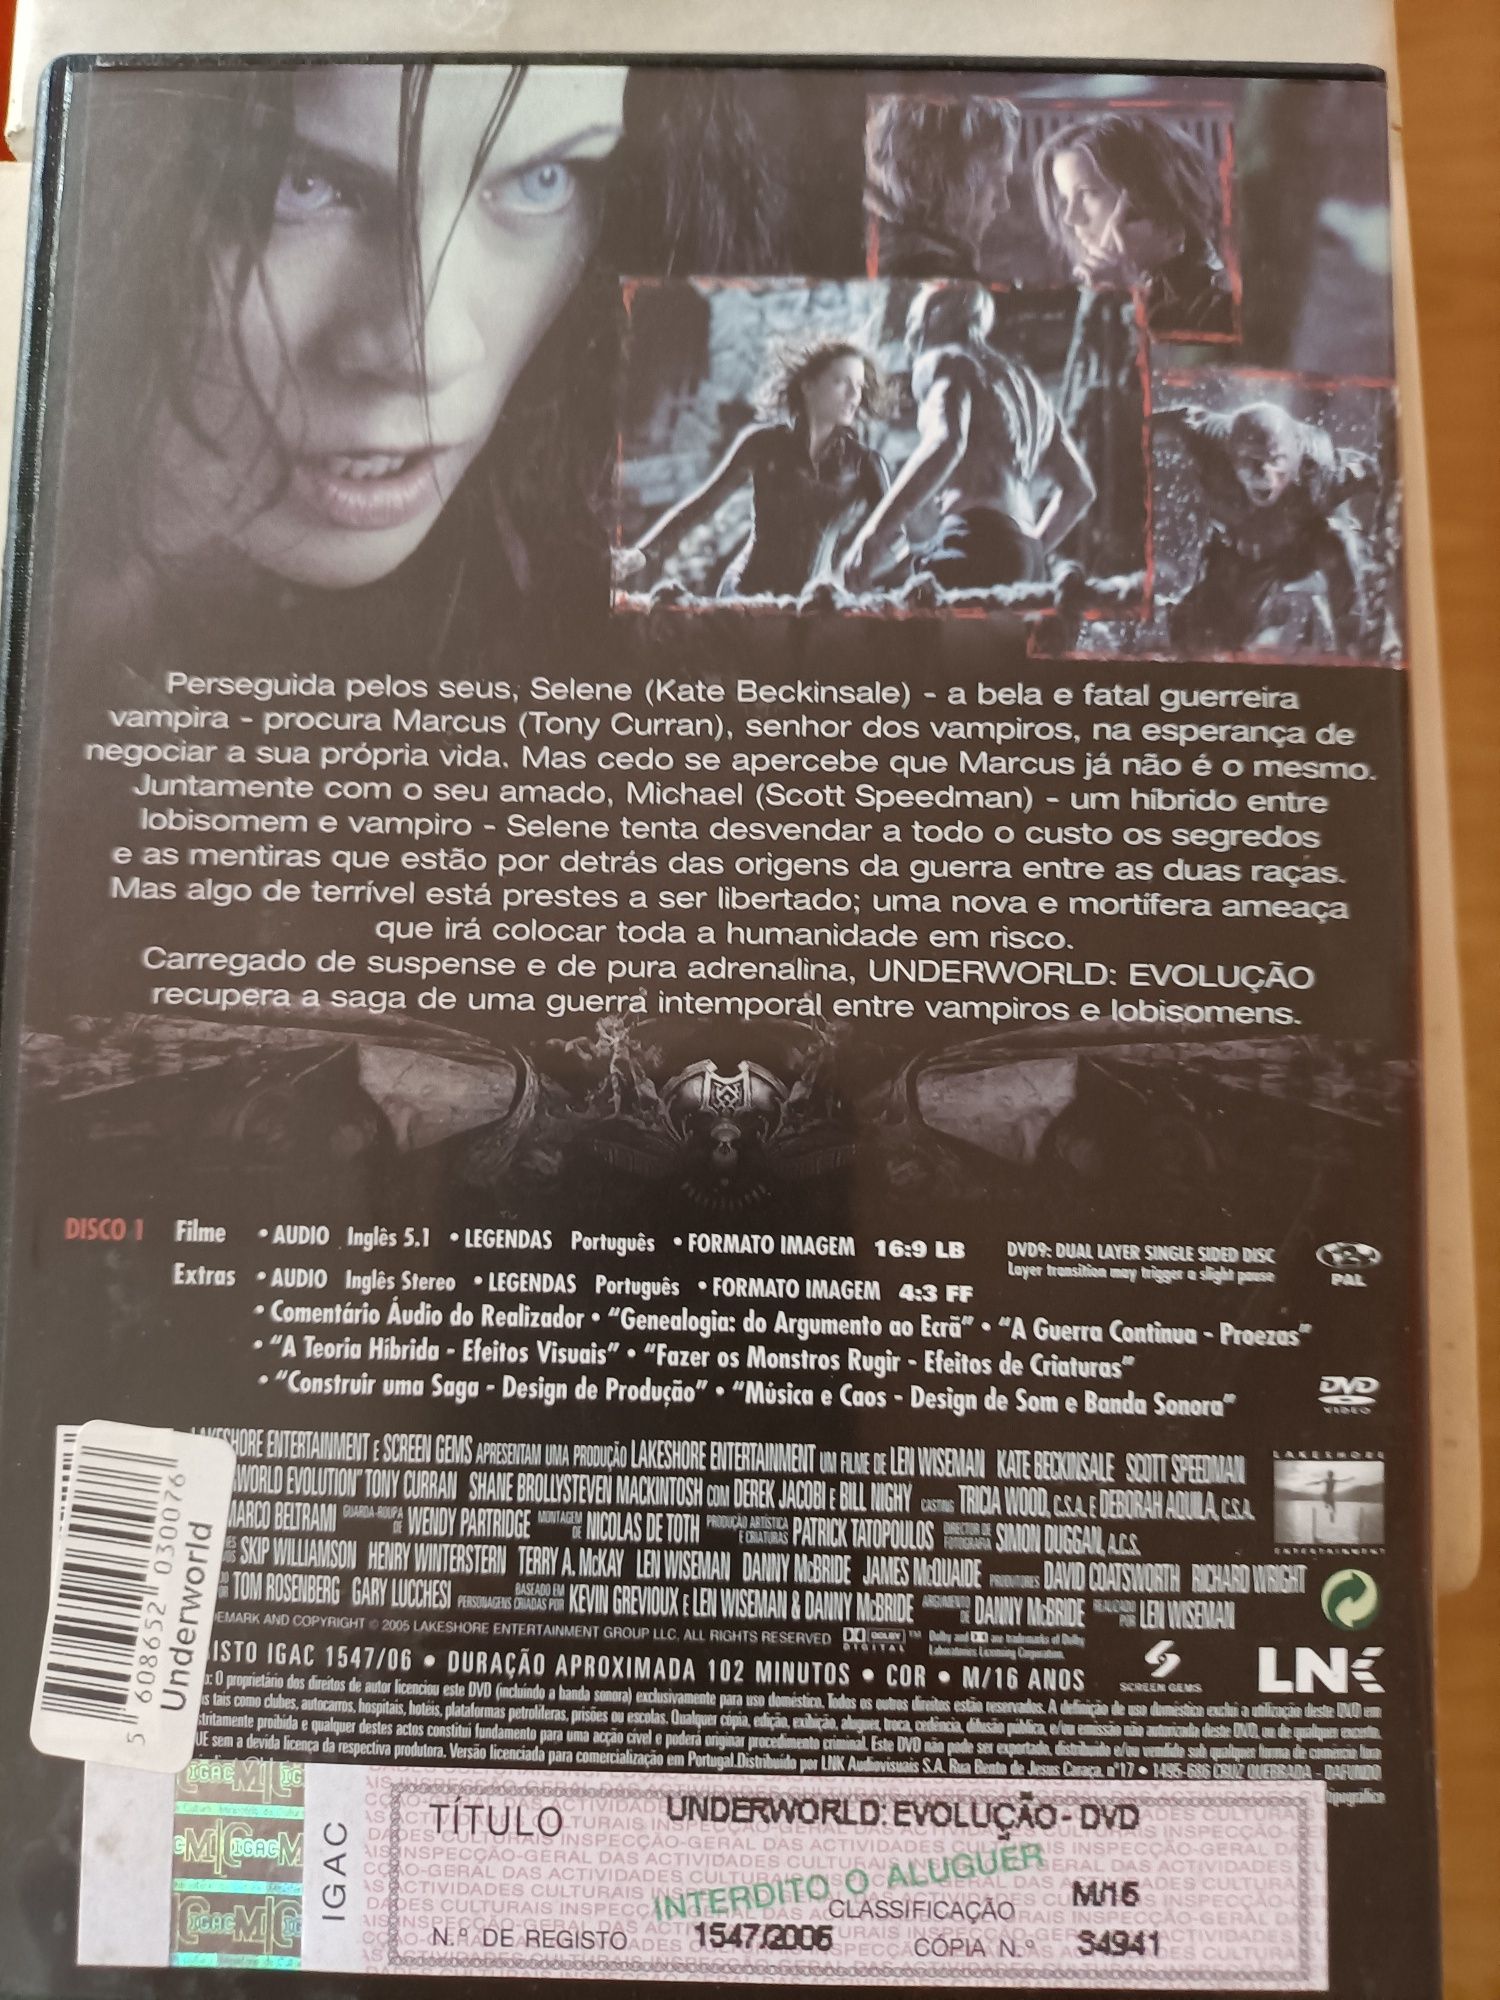 DVDs Underworld evolução & submundo